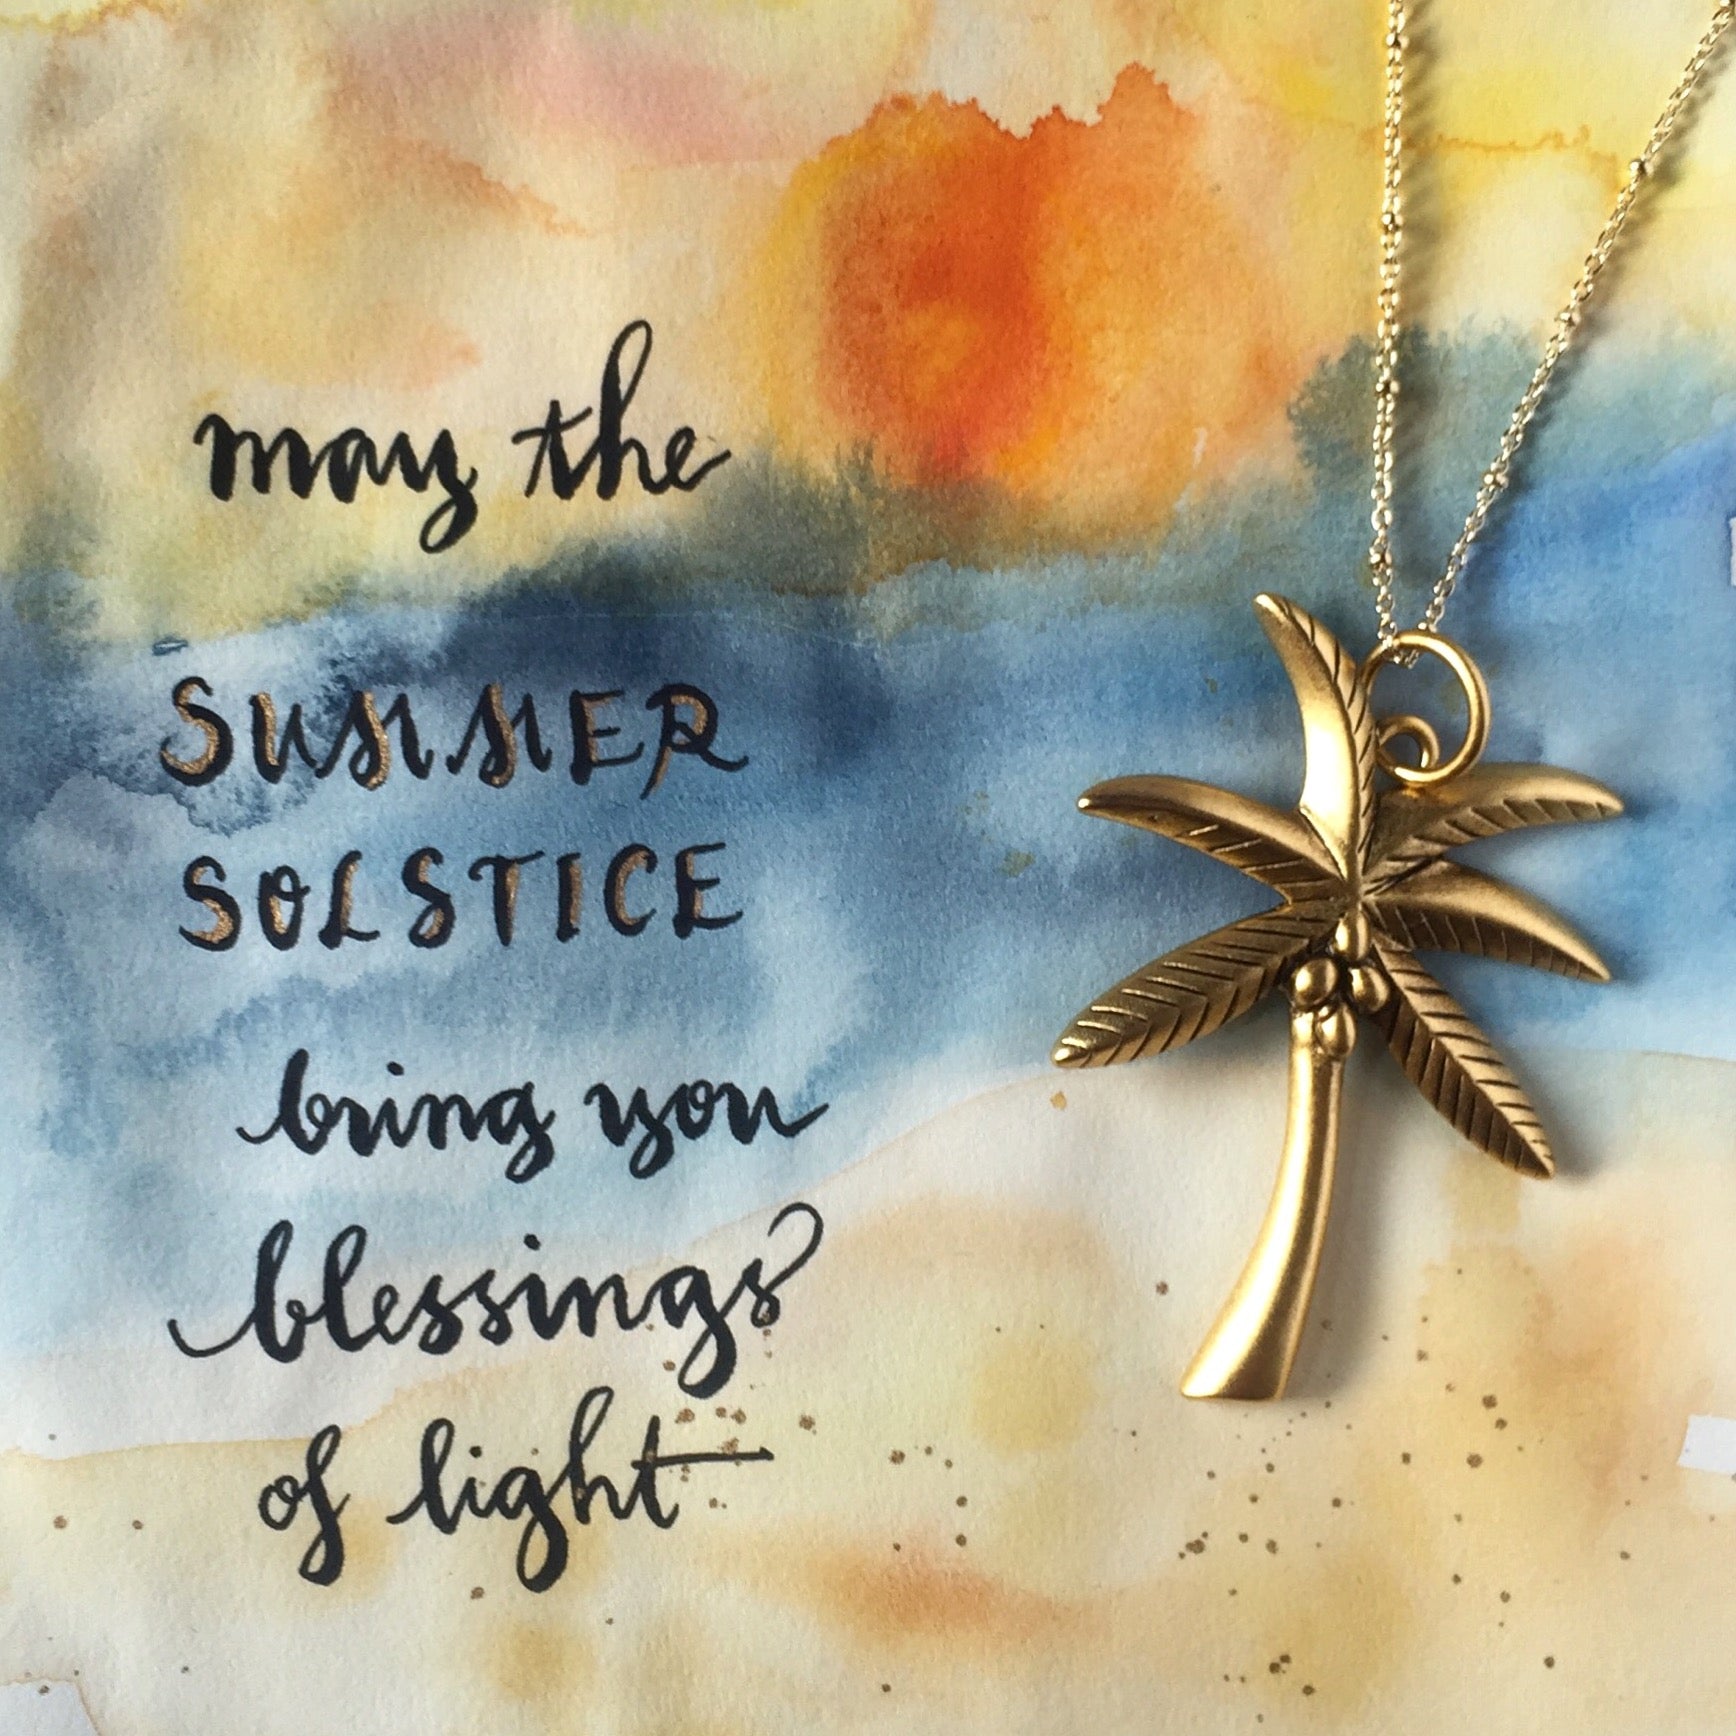 #SequinSayings - Happy Summer Solstice!